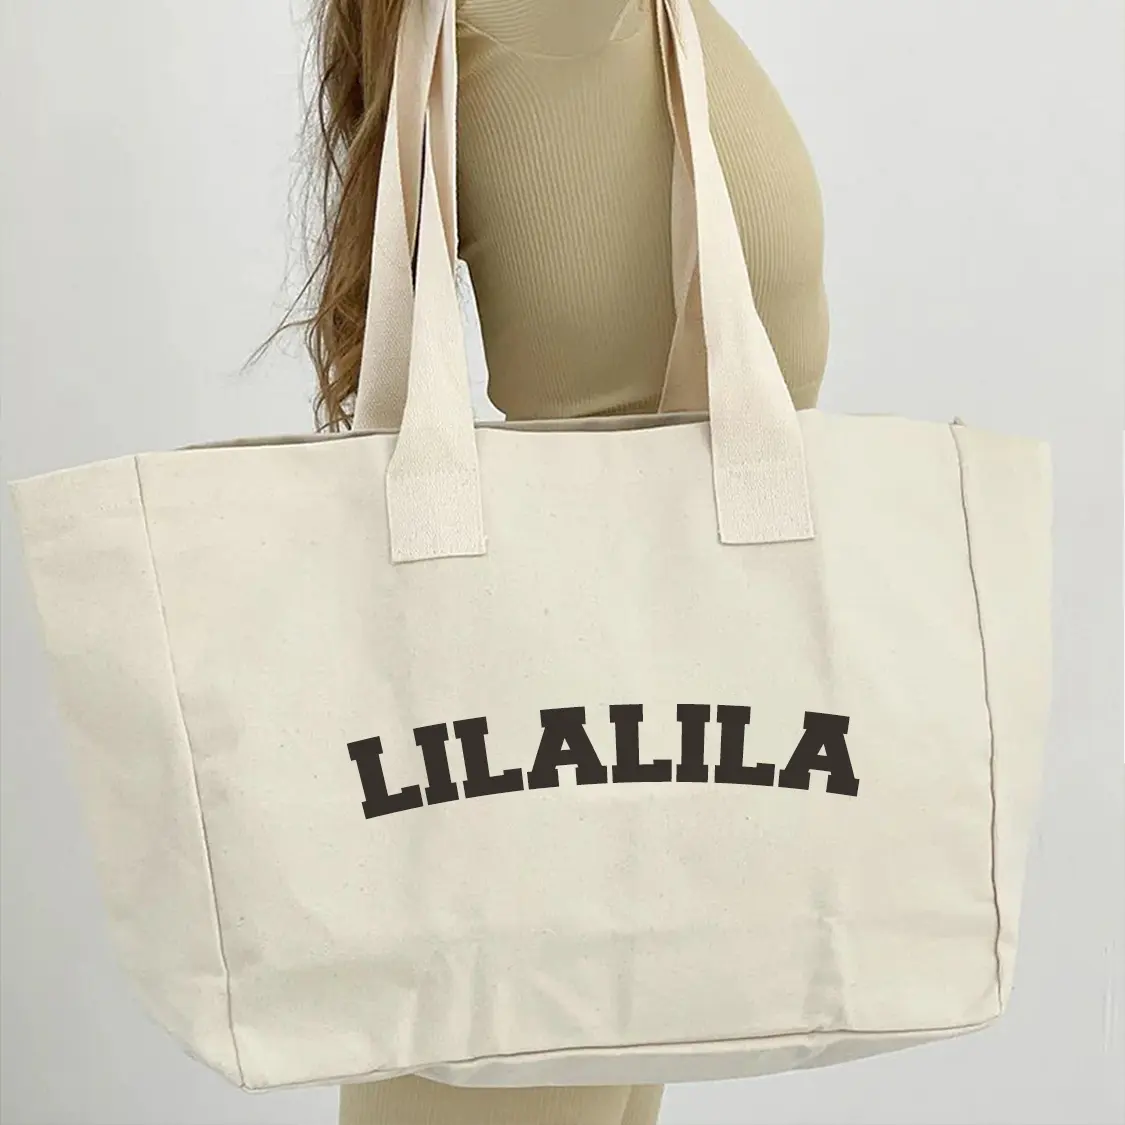 Оптовая продажа, большие модные многоразовые холщовые сумки для покупок с индивидуальным печатным логотипом